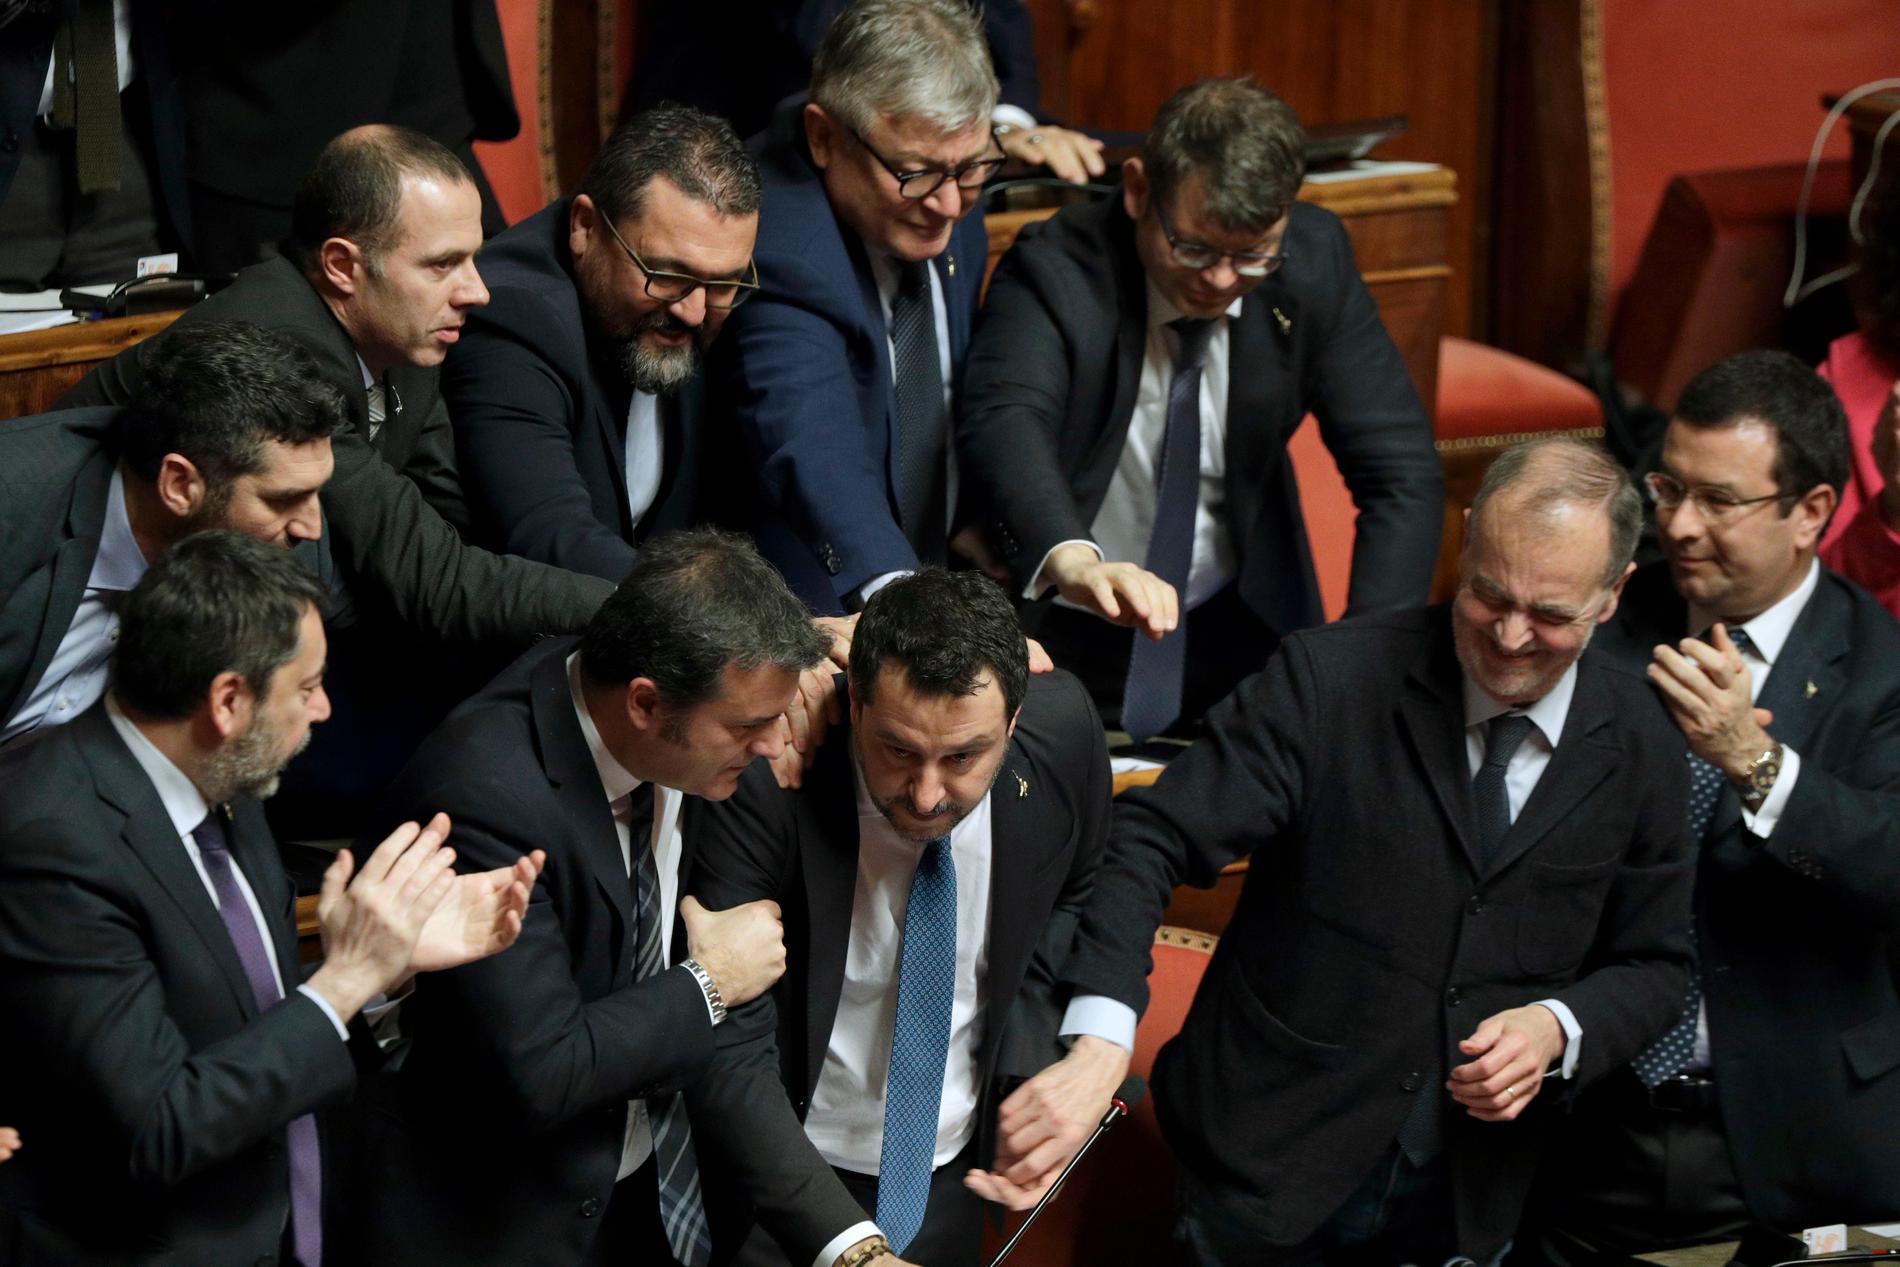 Matteo Salvini får stödklappar av Legakollegor efter senatens beslut om att häva hans immunitet.